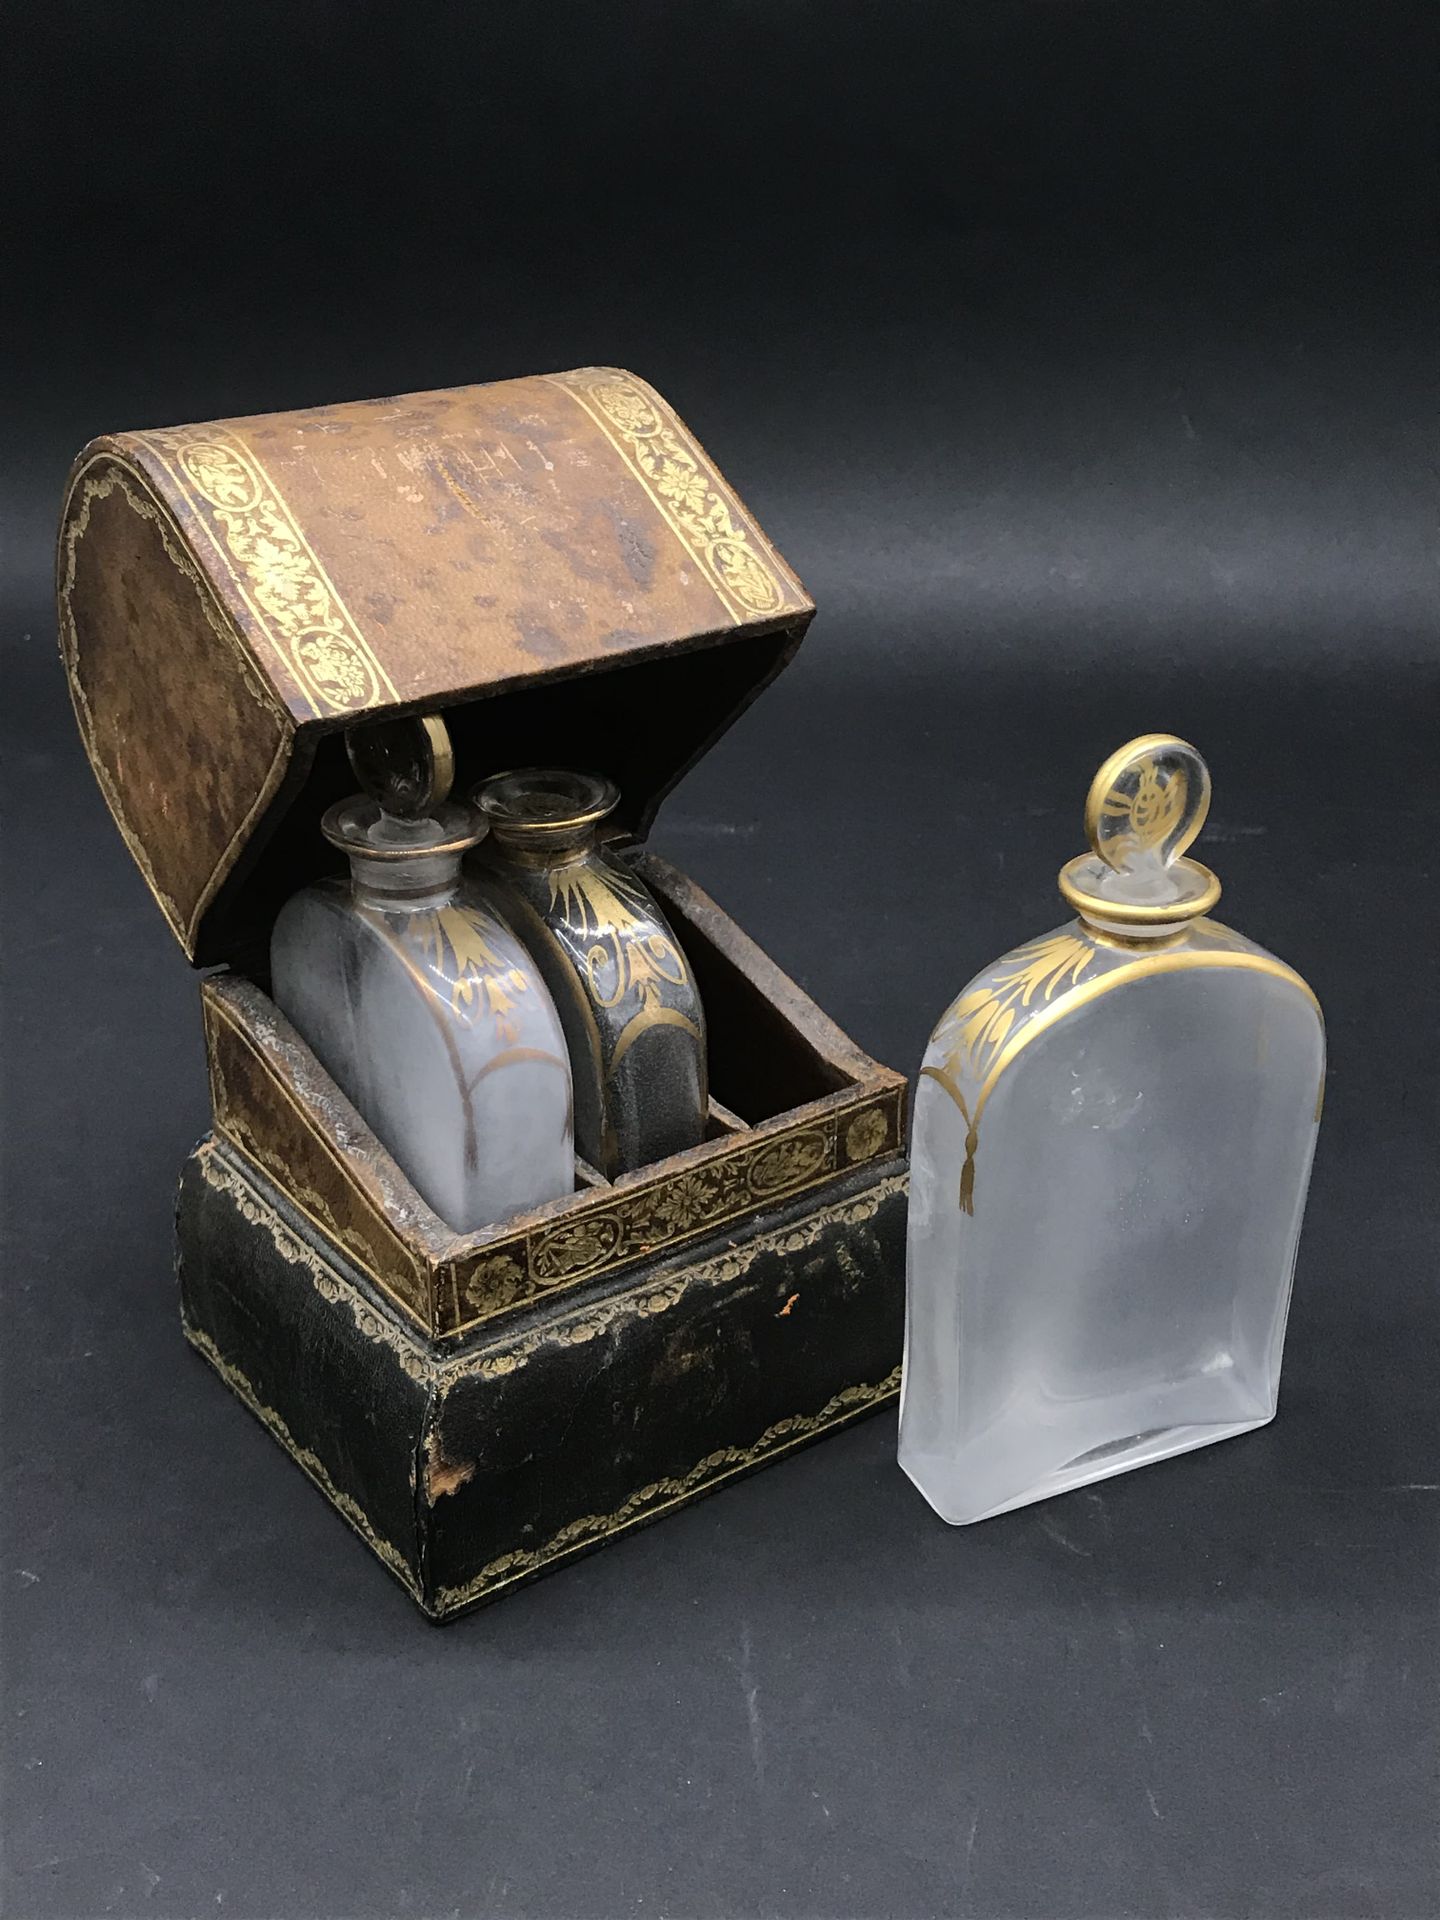 Null 化妆品套装

盒子上有镀金的皮革装饰，上面有两个在公爵皇冠下连接的盾形纹章。它包含三个铁制和镀金装饰的扁瓶。

一个破损的瓶塞

18世纪末至19世纪&hellip;